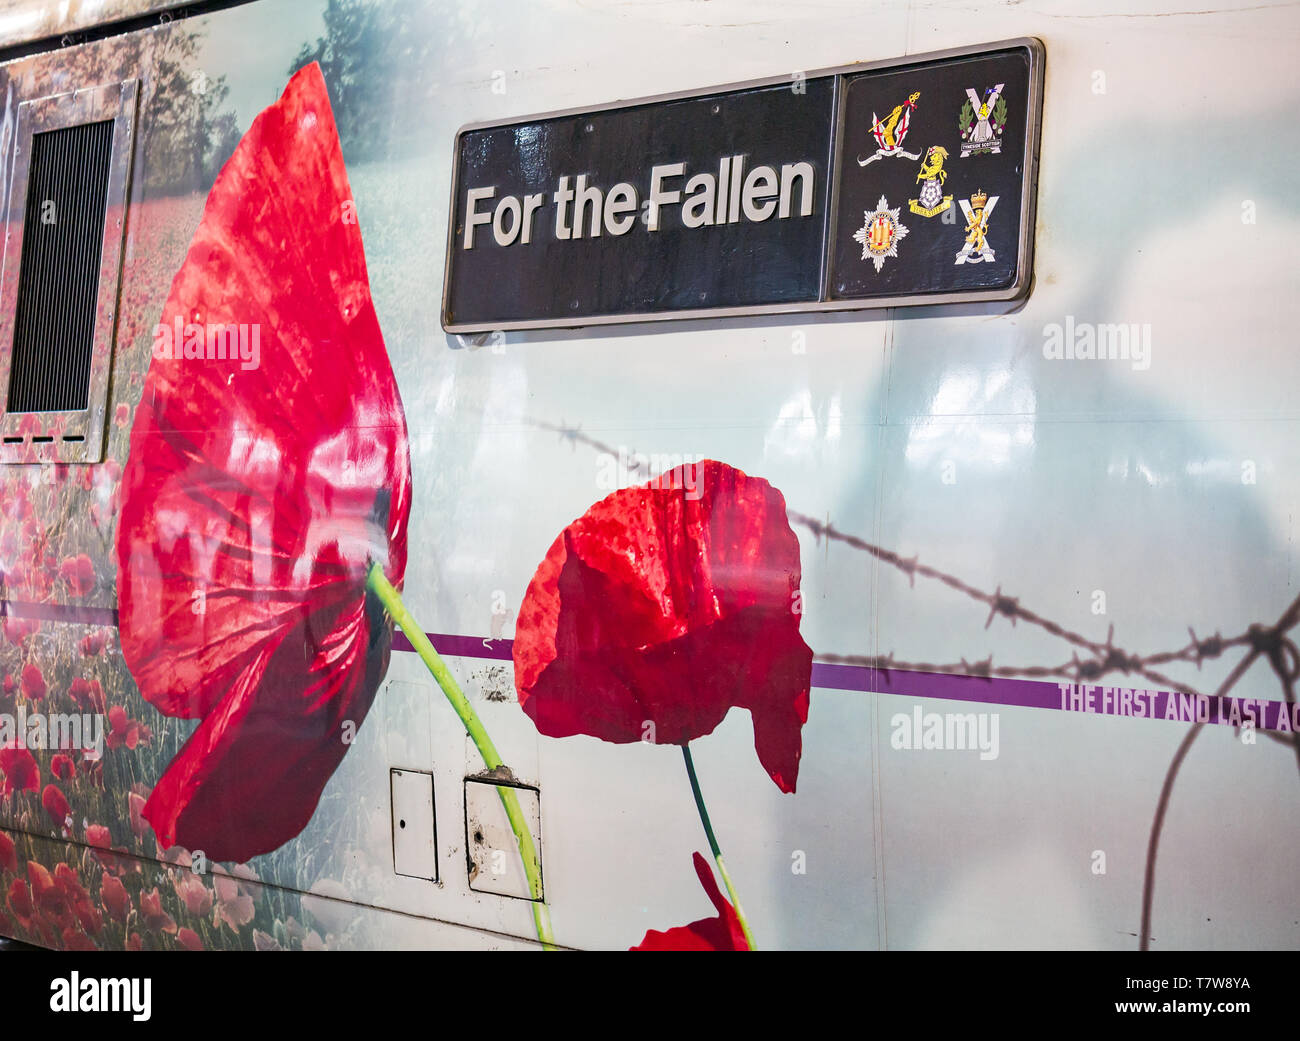 Acto de conmemoración del día del Armisticio, tren de la costa este con amapolas rojas para los caídos, Reino Unido Foto de stock